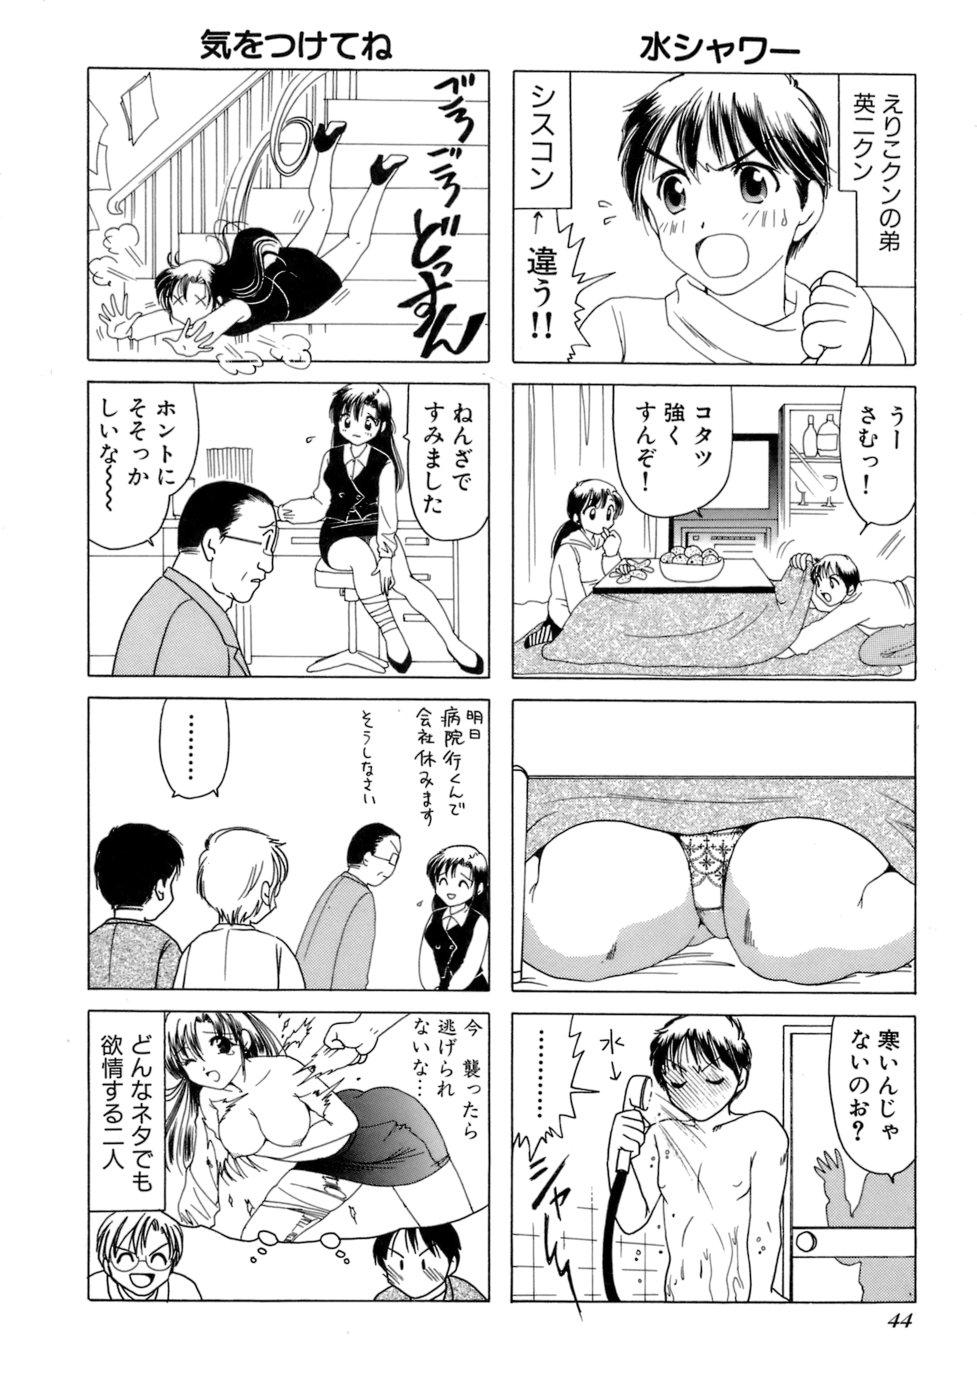 Eriko-kun, Ocha!! Vol.02 46